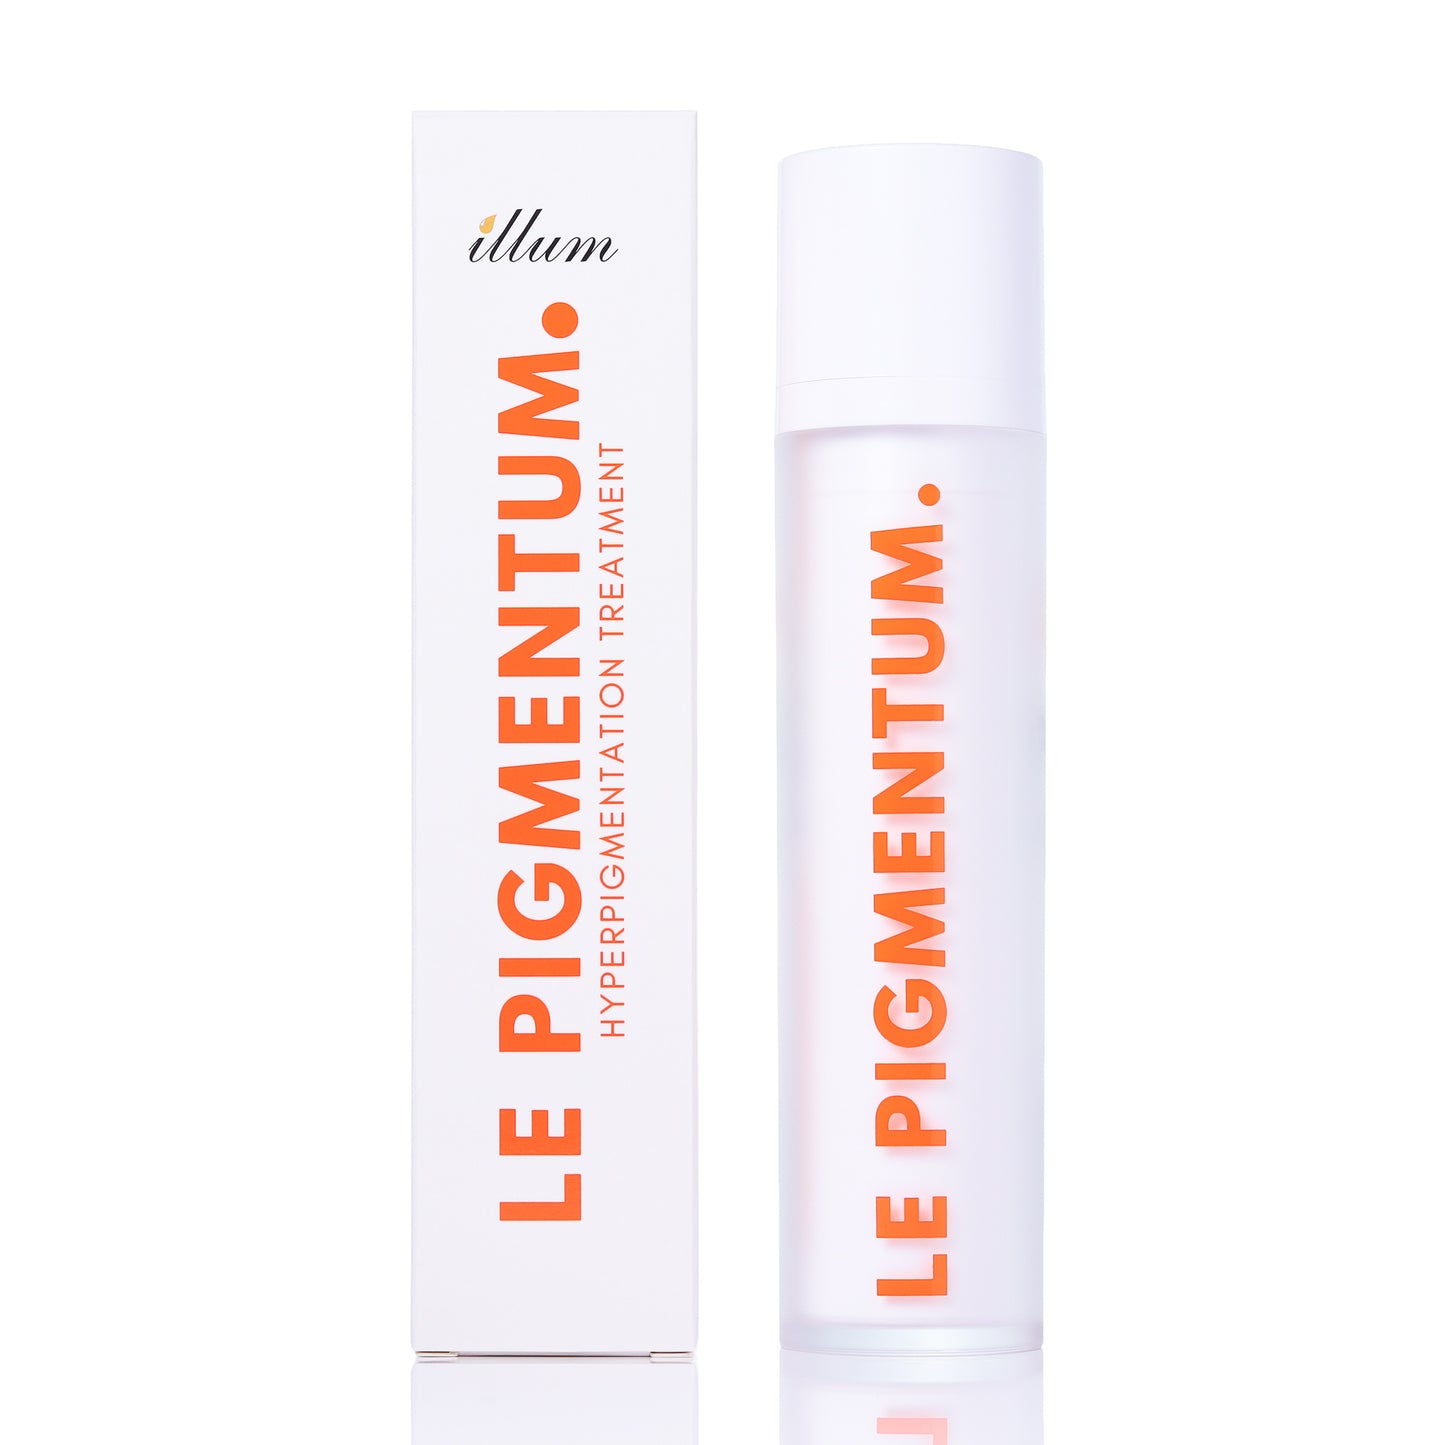 Le Pigmentum Cream - Hyperpigmentation Treatment